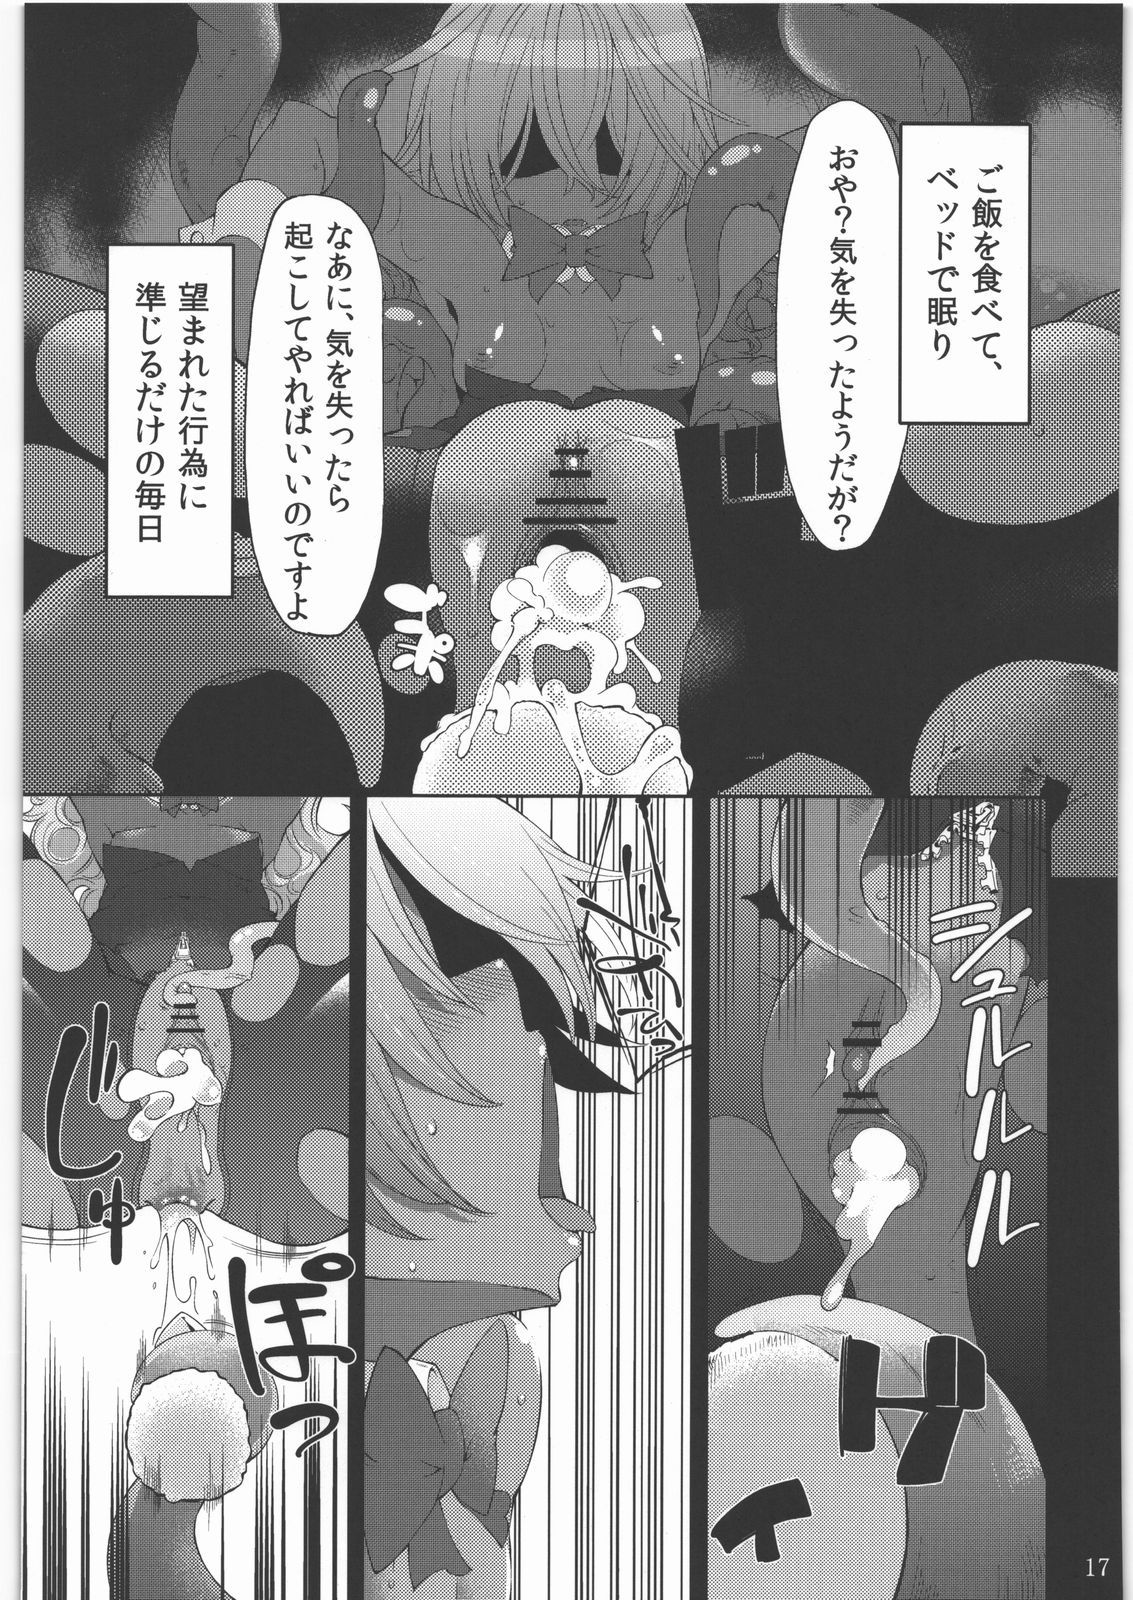 (SC56) [Shouwa Saishuu Sensen (Hanauna)] Shoujo no Nichijou / Dorei to Shokushu (Dragon Quest III) page 16 full